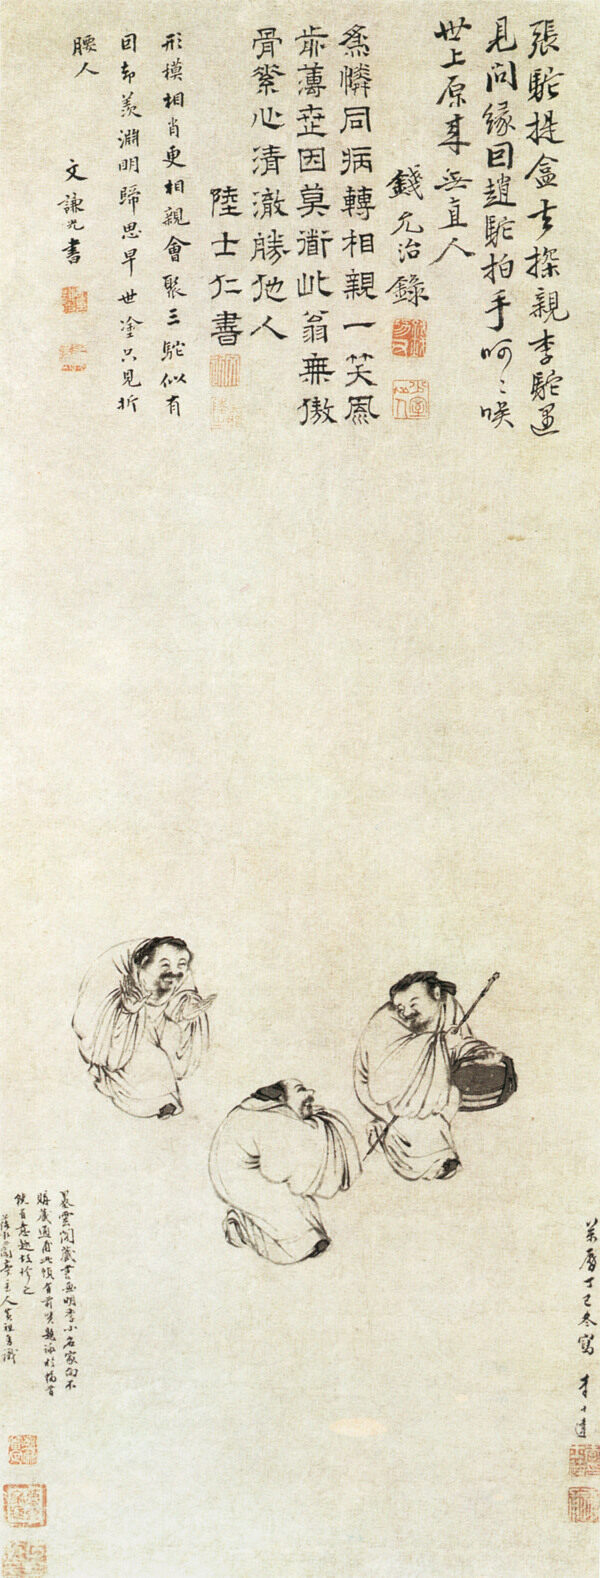 中国传世古画艺术